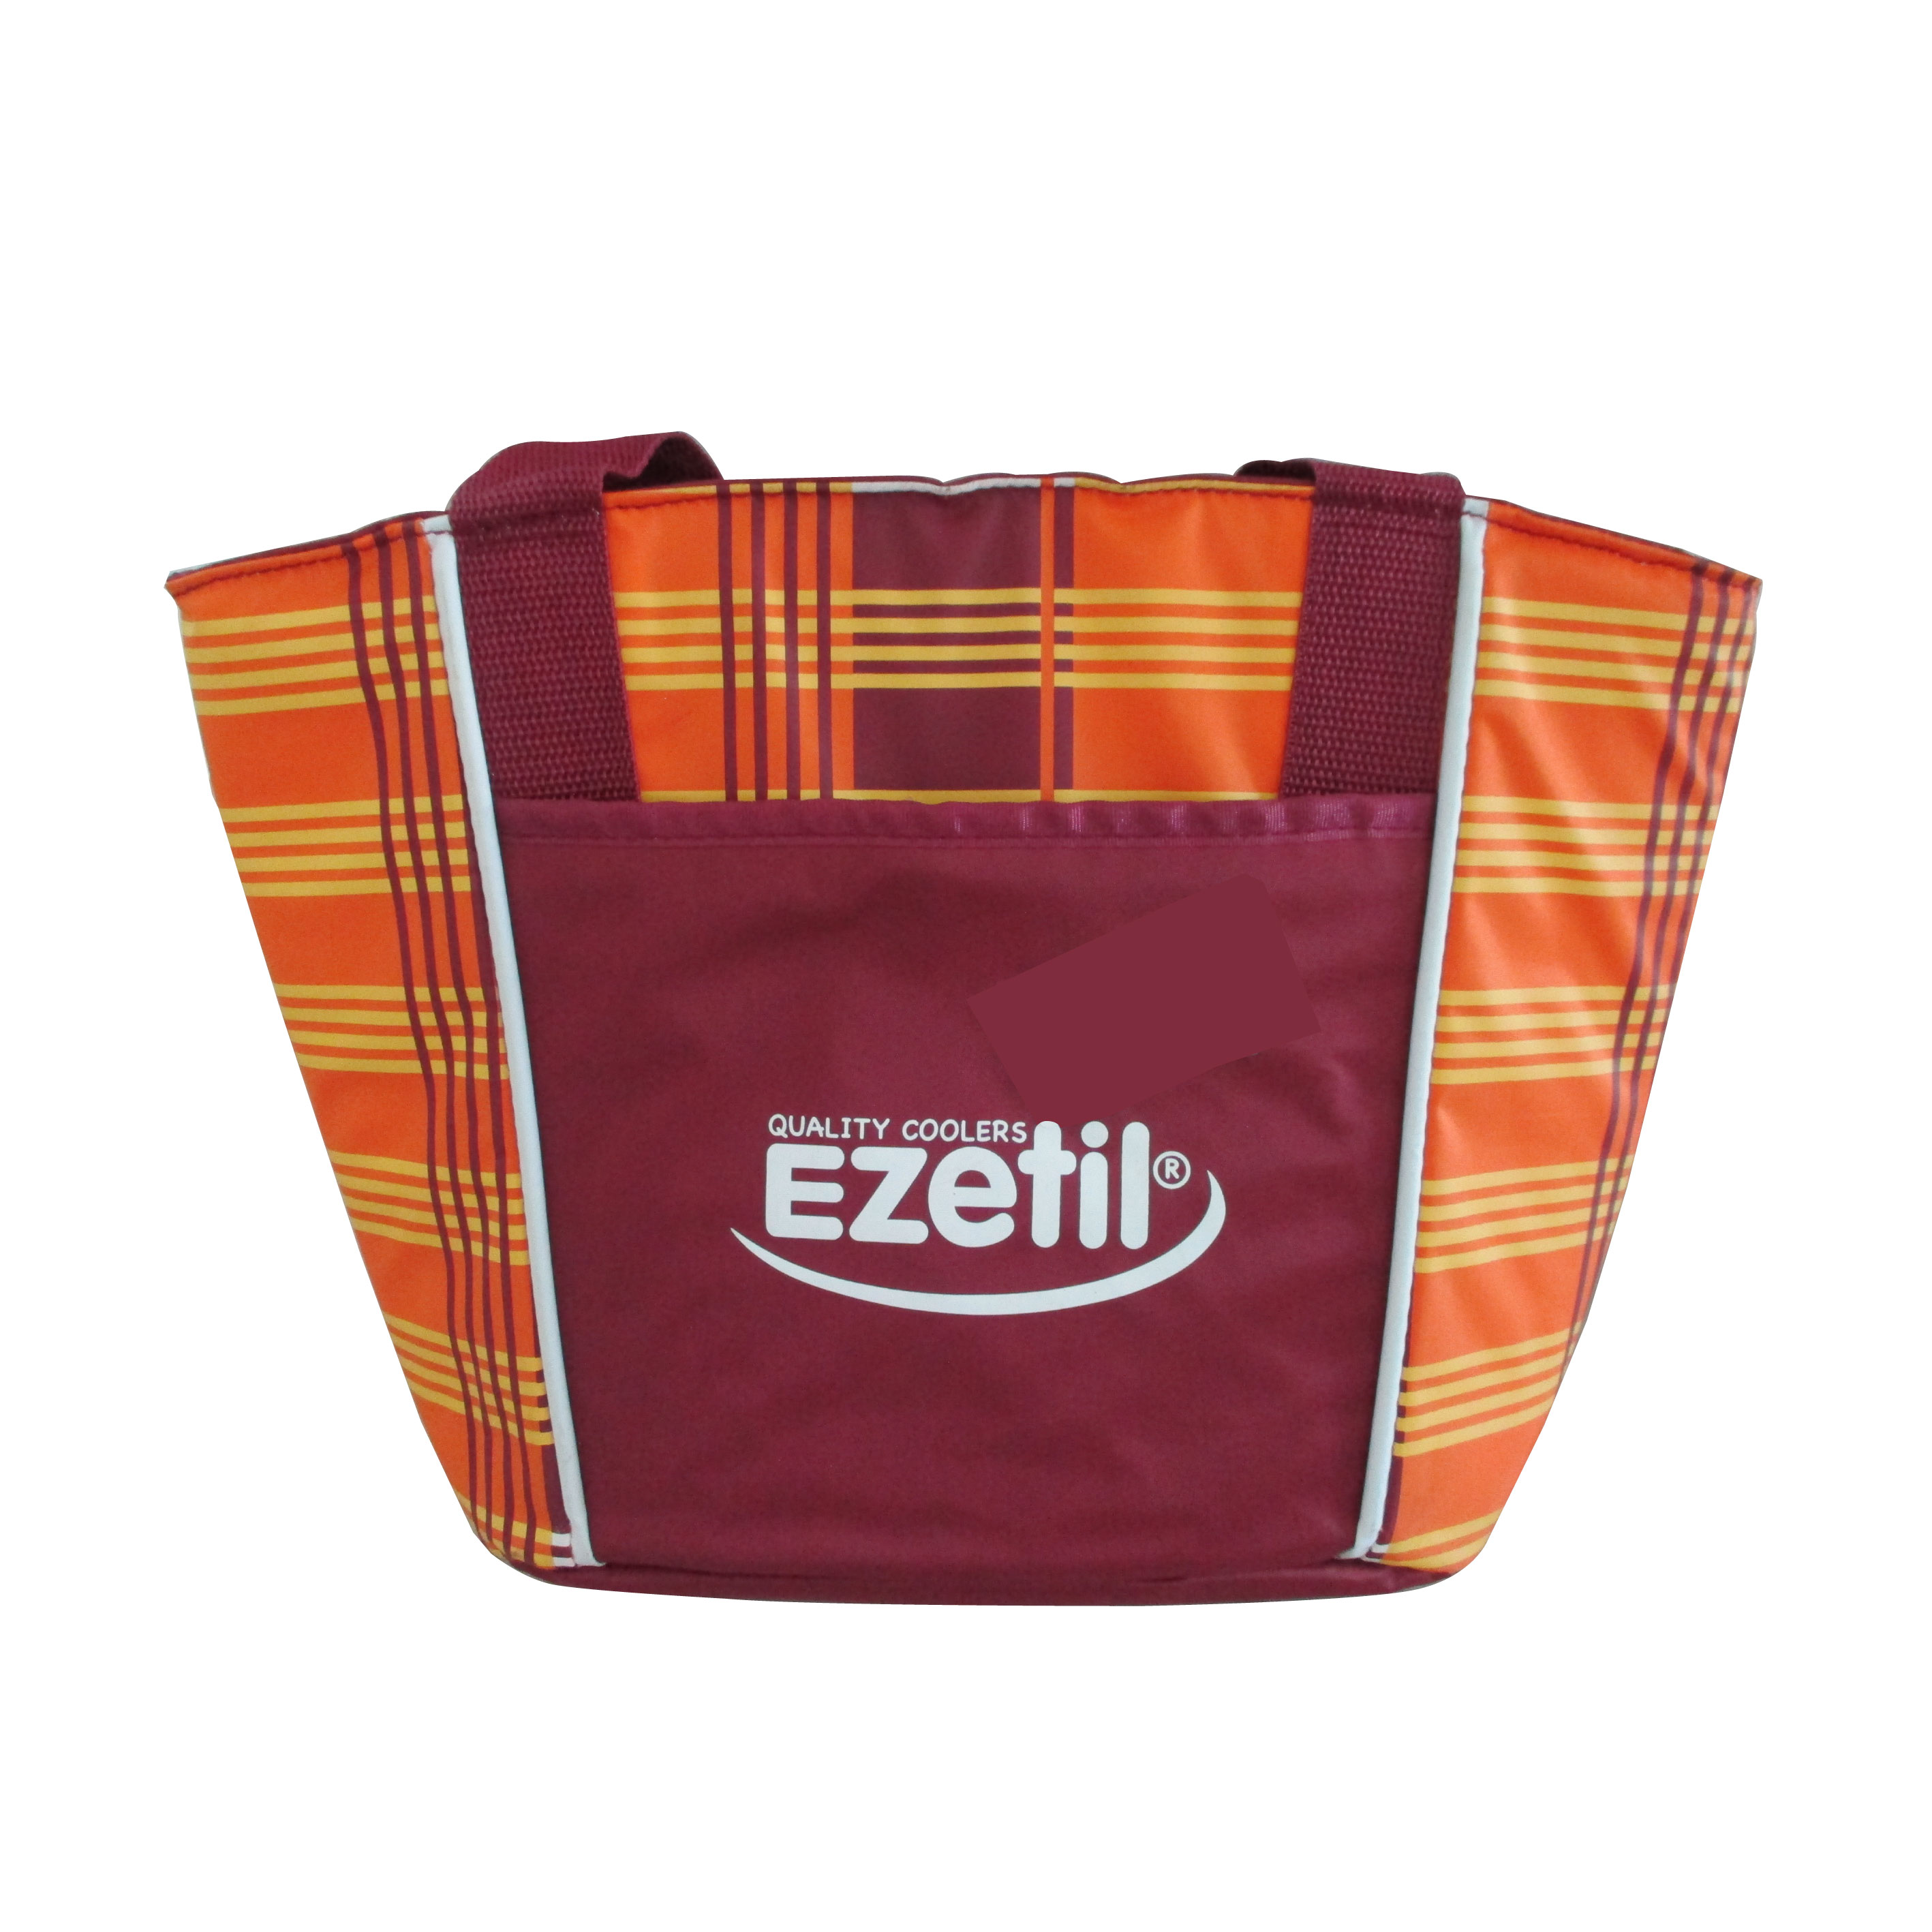 Ezetil Cloth Portable Coolbox Isothermique Lifestyle 7 (Blue/Orange), 16080277